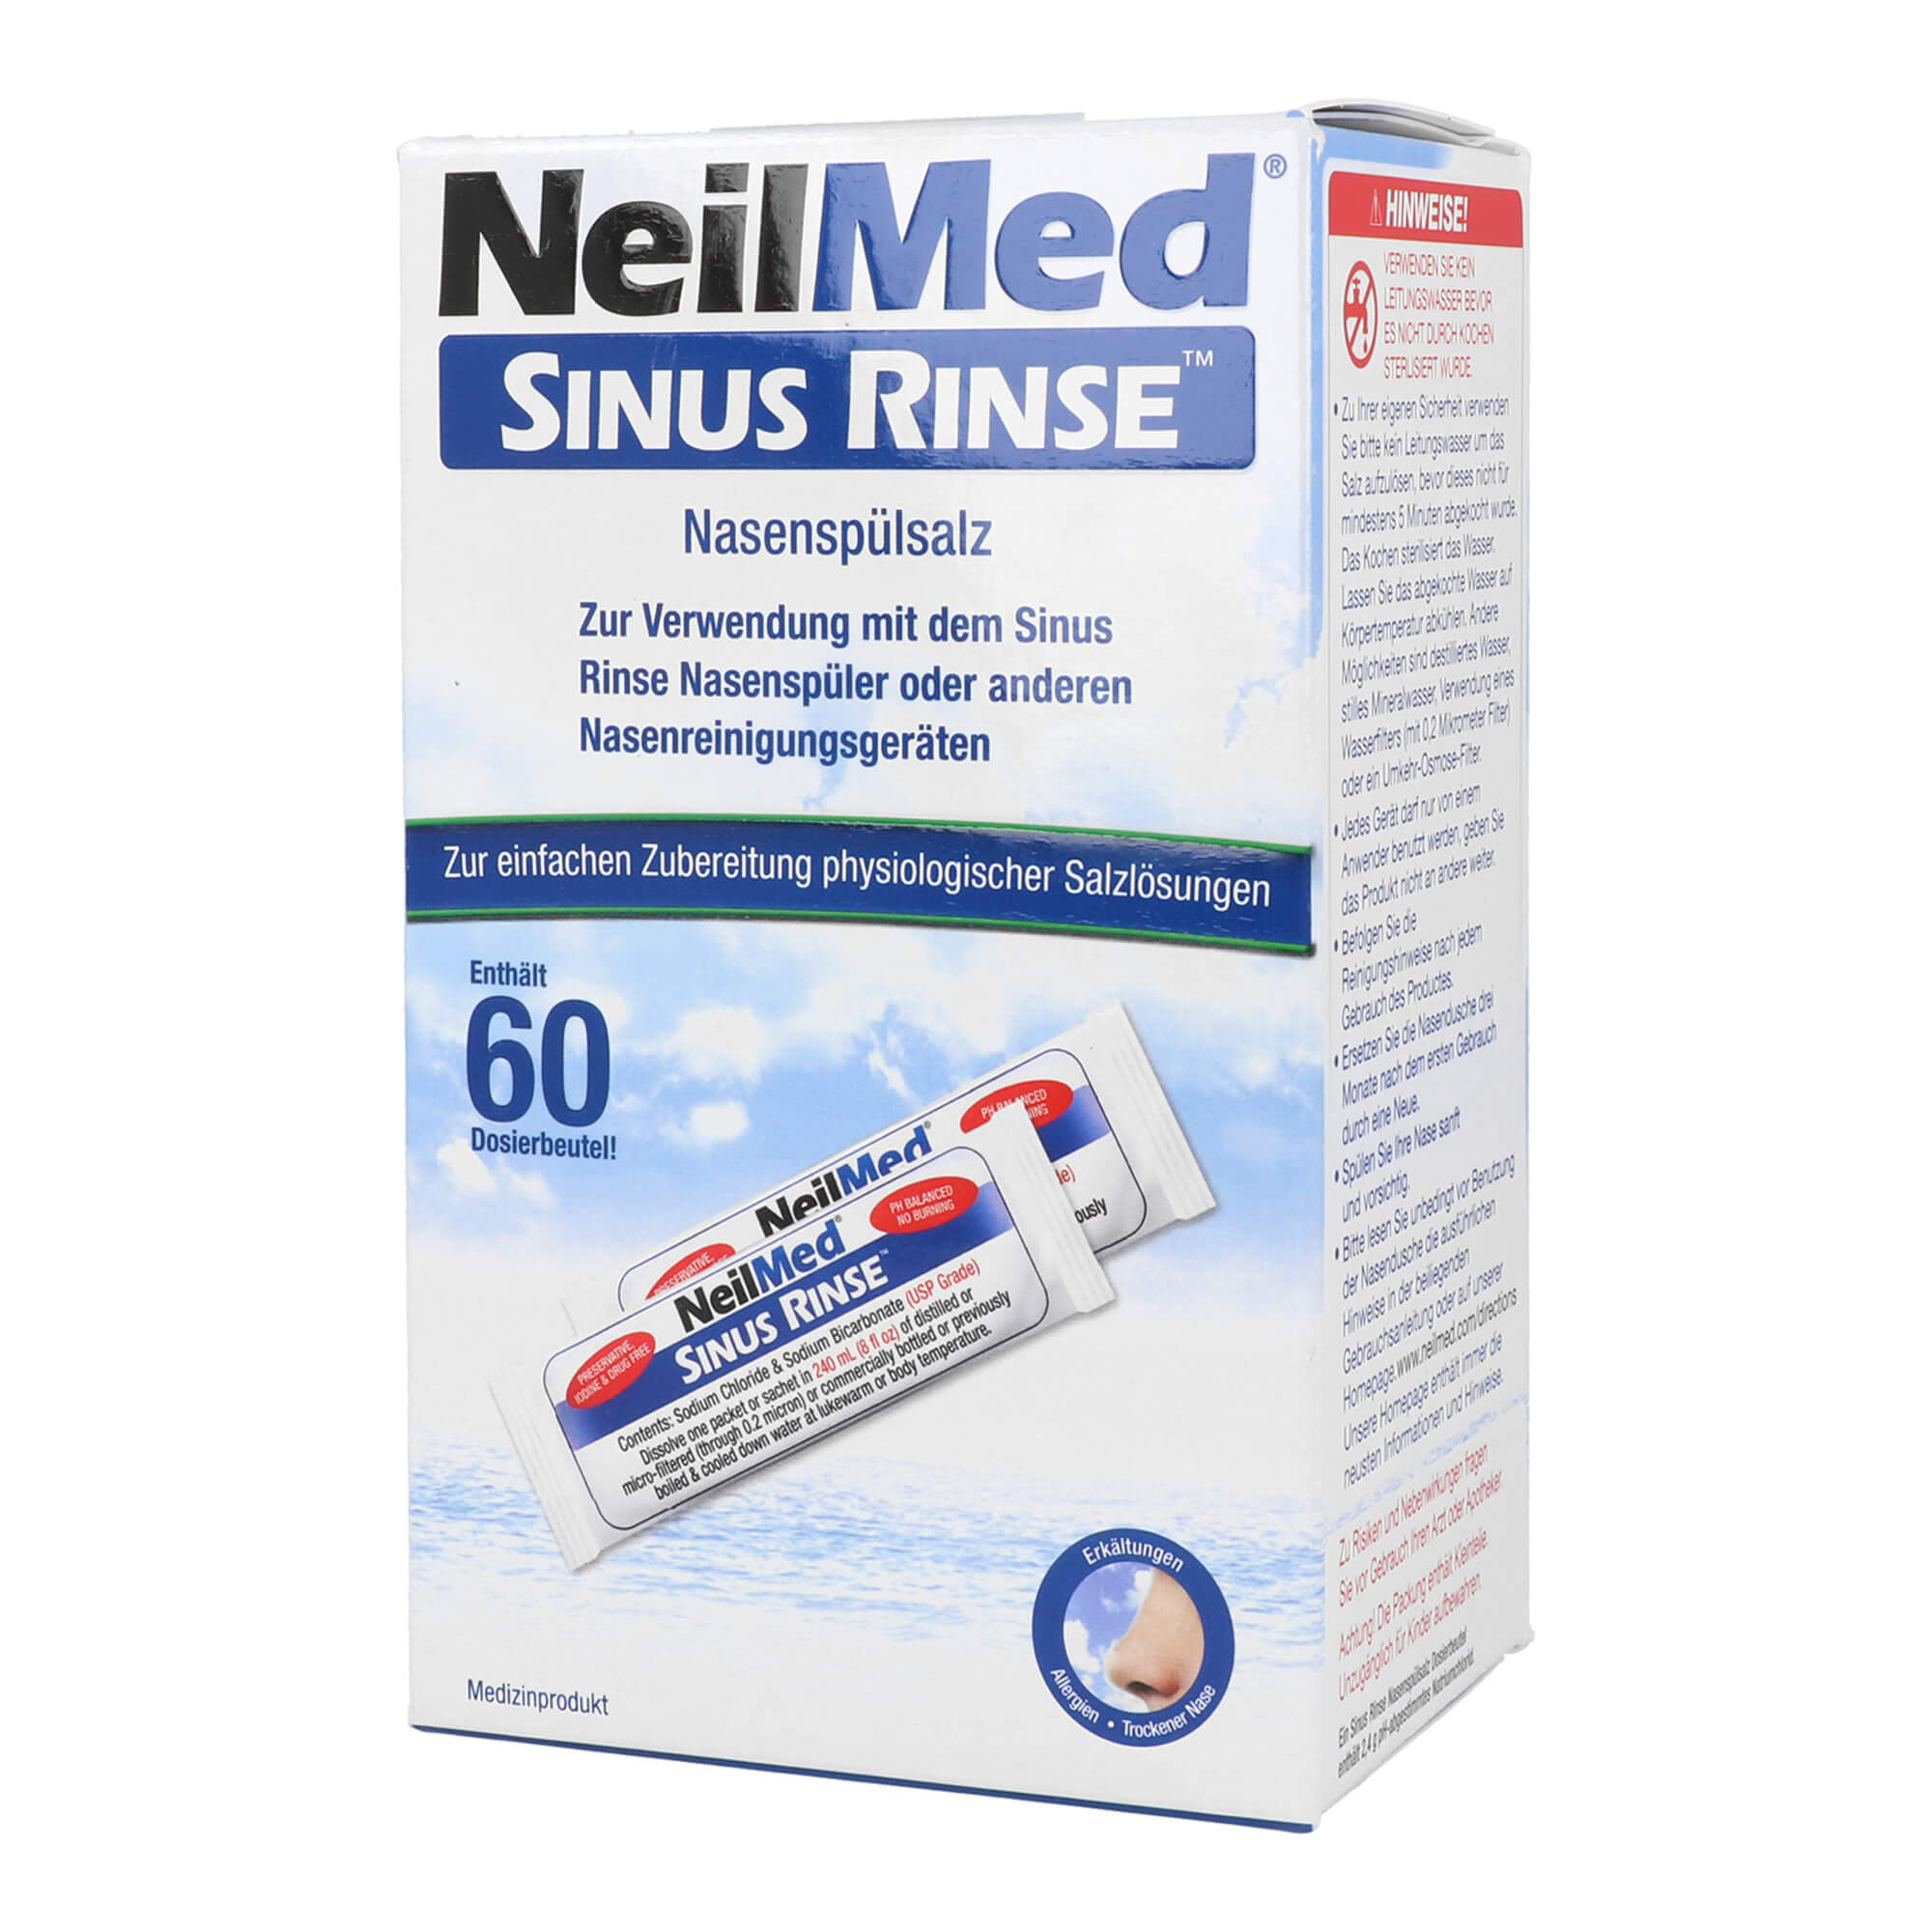 Zur Verwendung mit dem Sinus Rinse Nasenspüler oder anderen Nasenreinigungsgeräten. Ohne Nasenspüler.